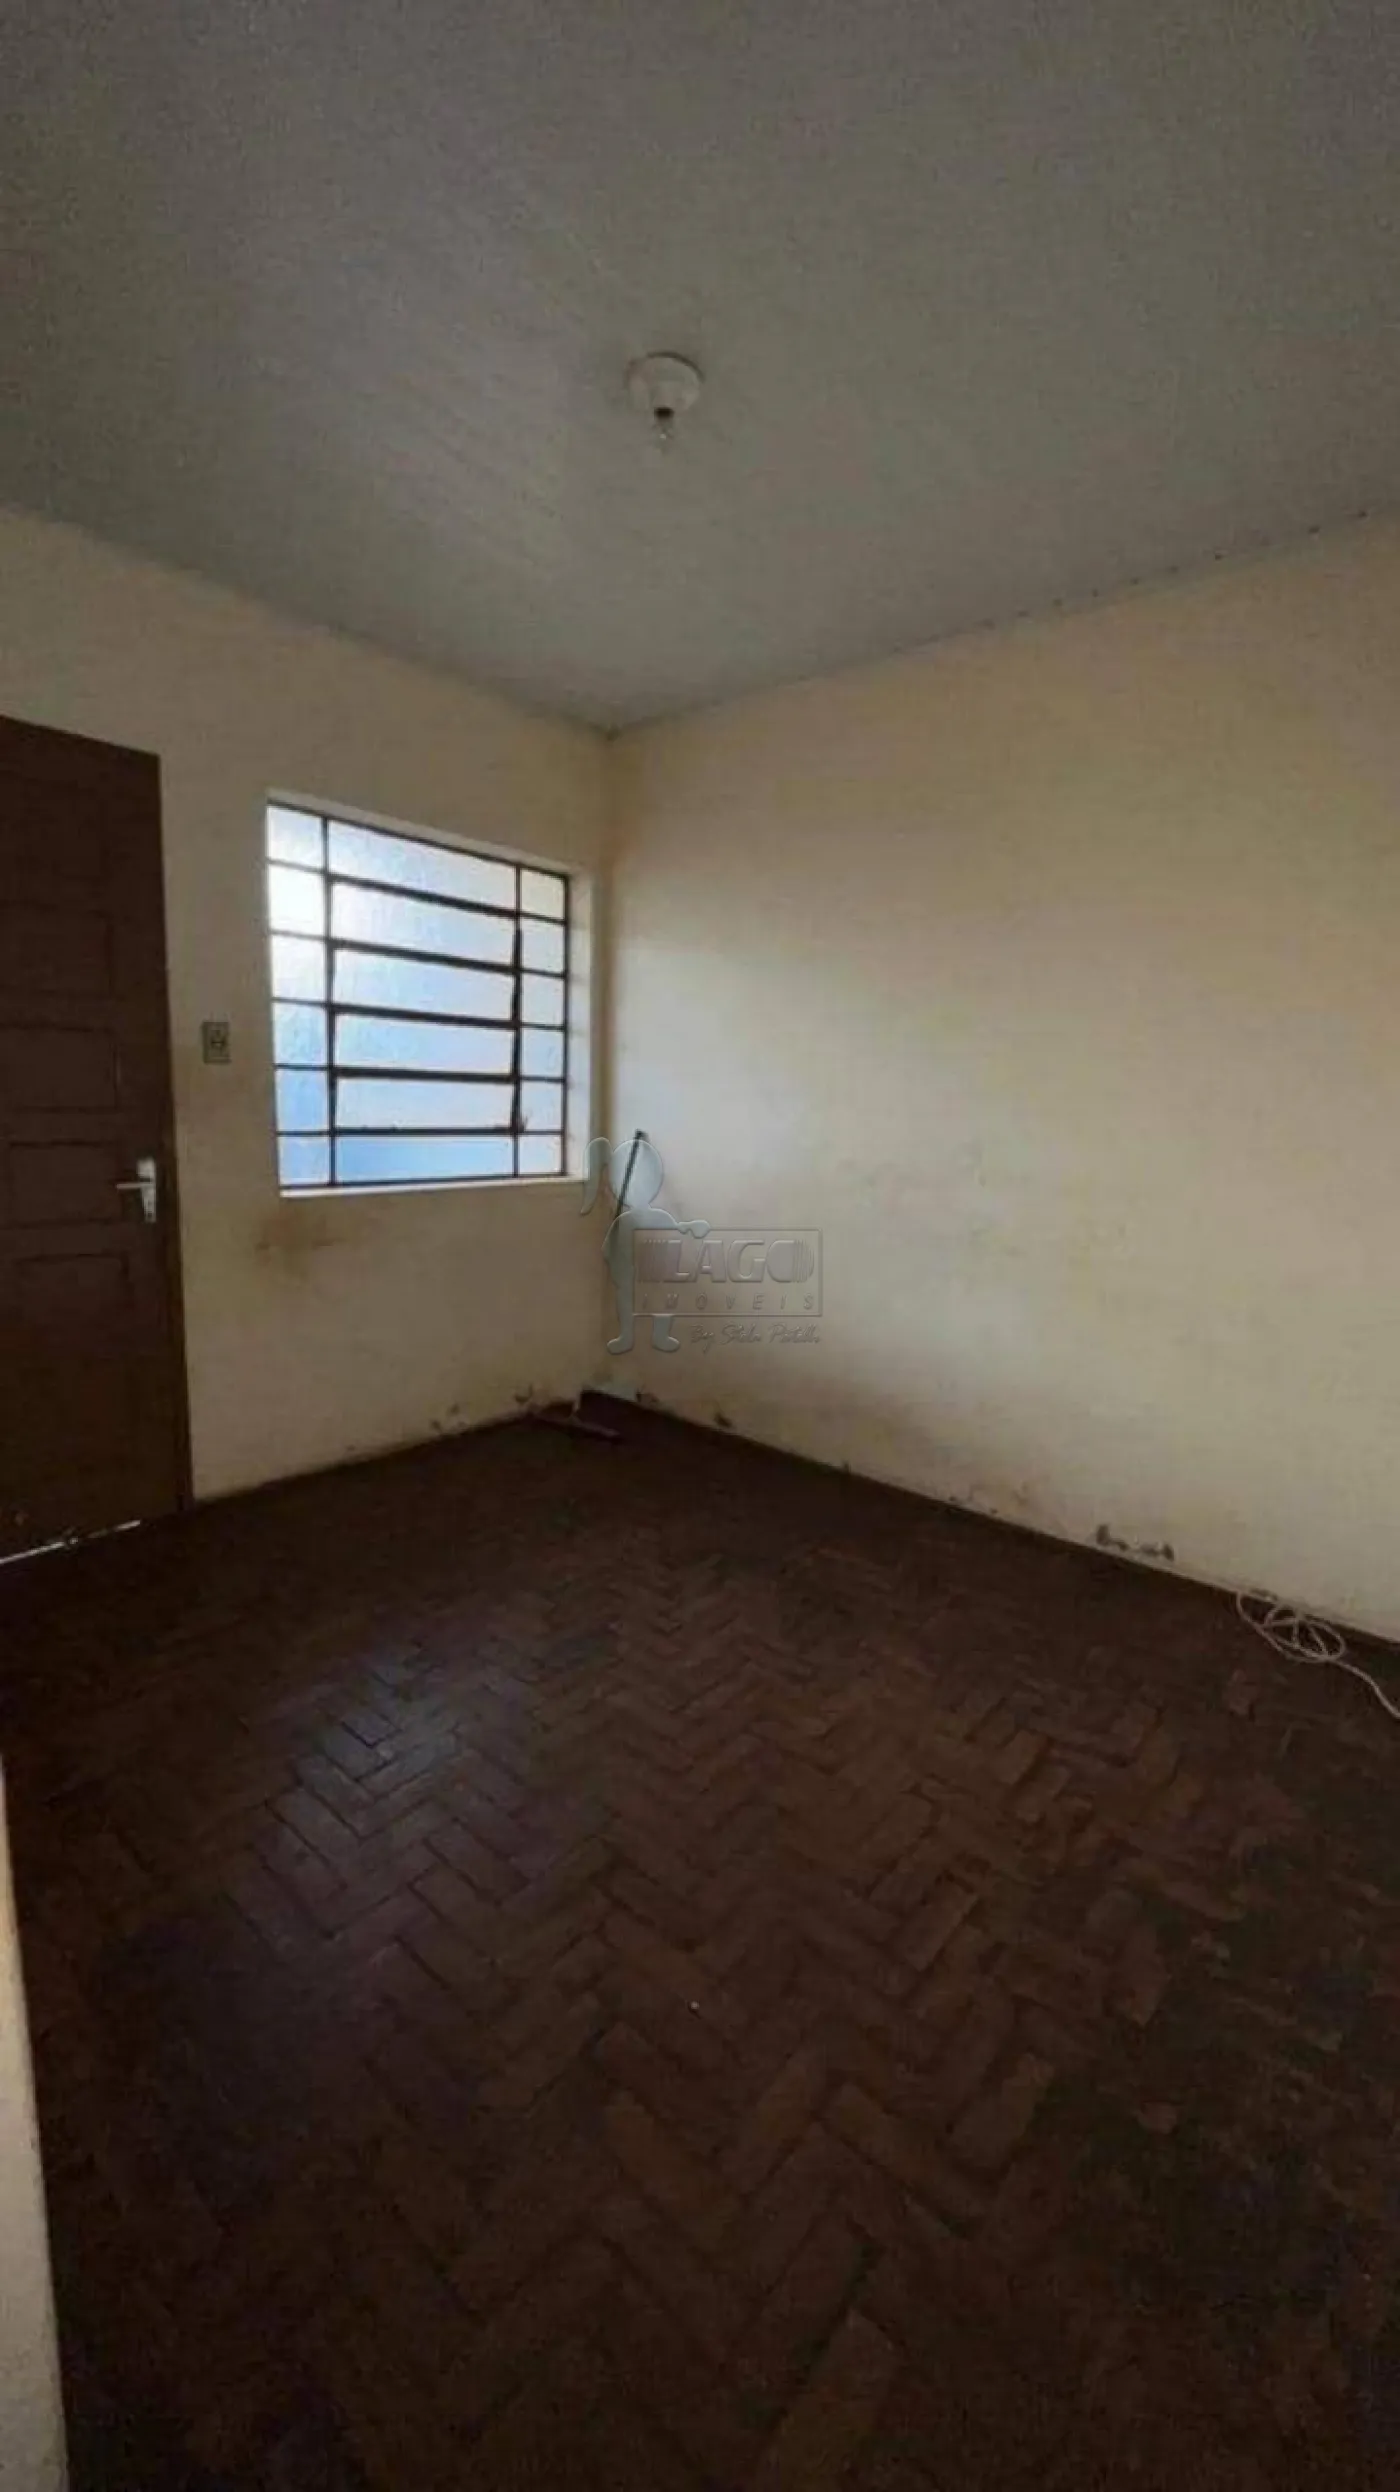 Comprar Casa / Padrão em Ribeirão Preto R$ 240.000,00 - Foto 1